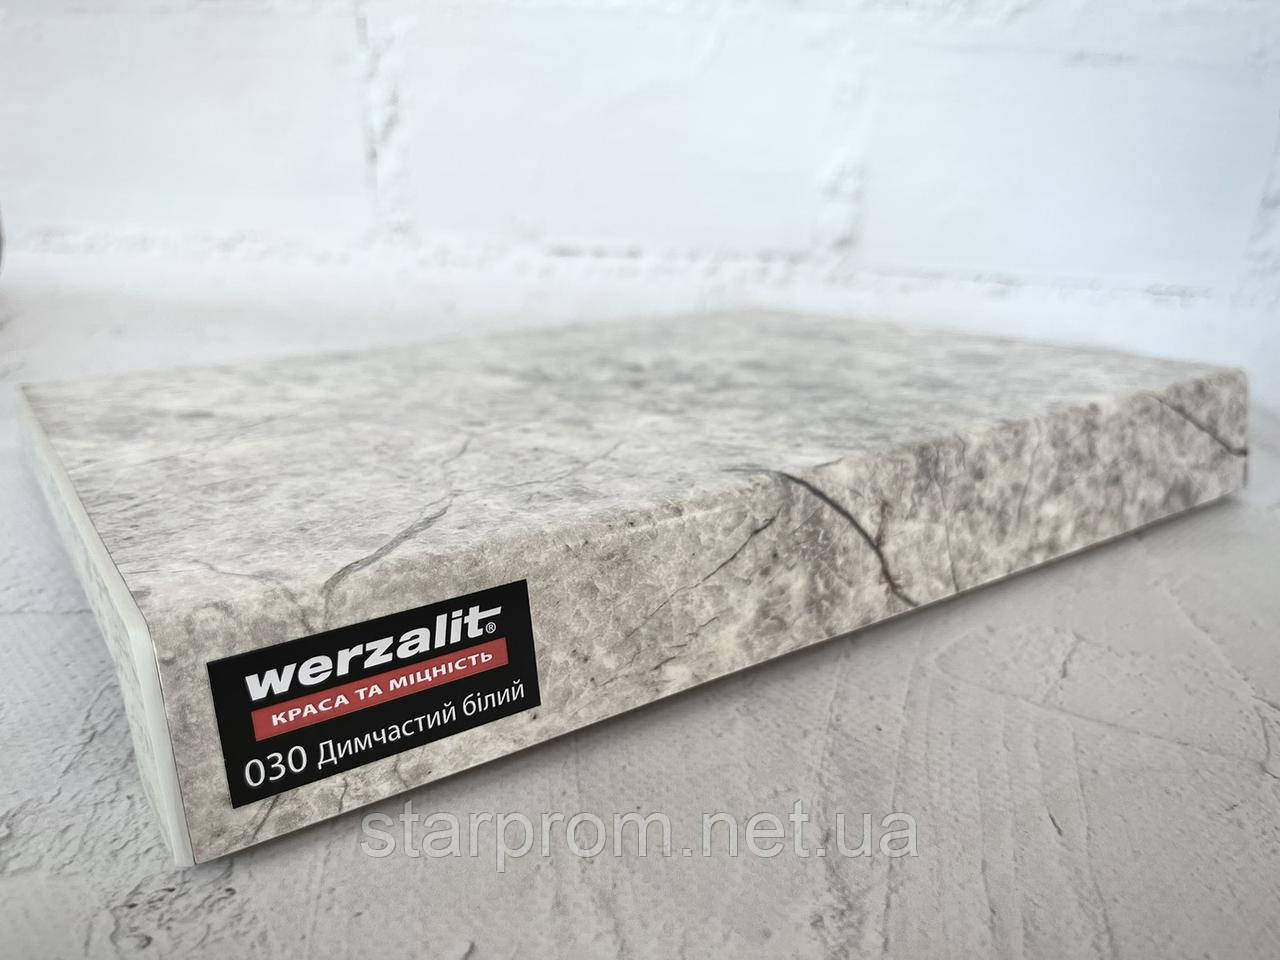 Підвіконня Werzalit Exclusiv (Німеччина) 030 димчастий білий 350мм